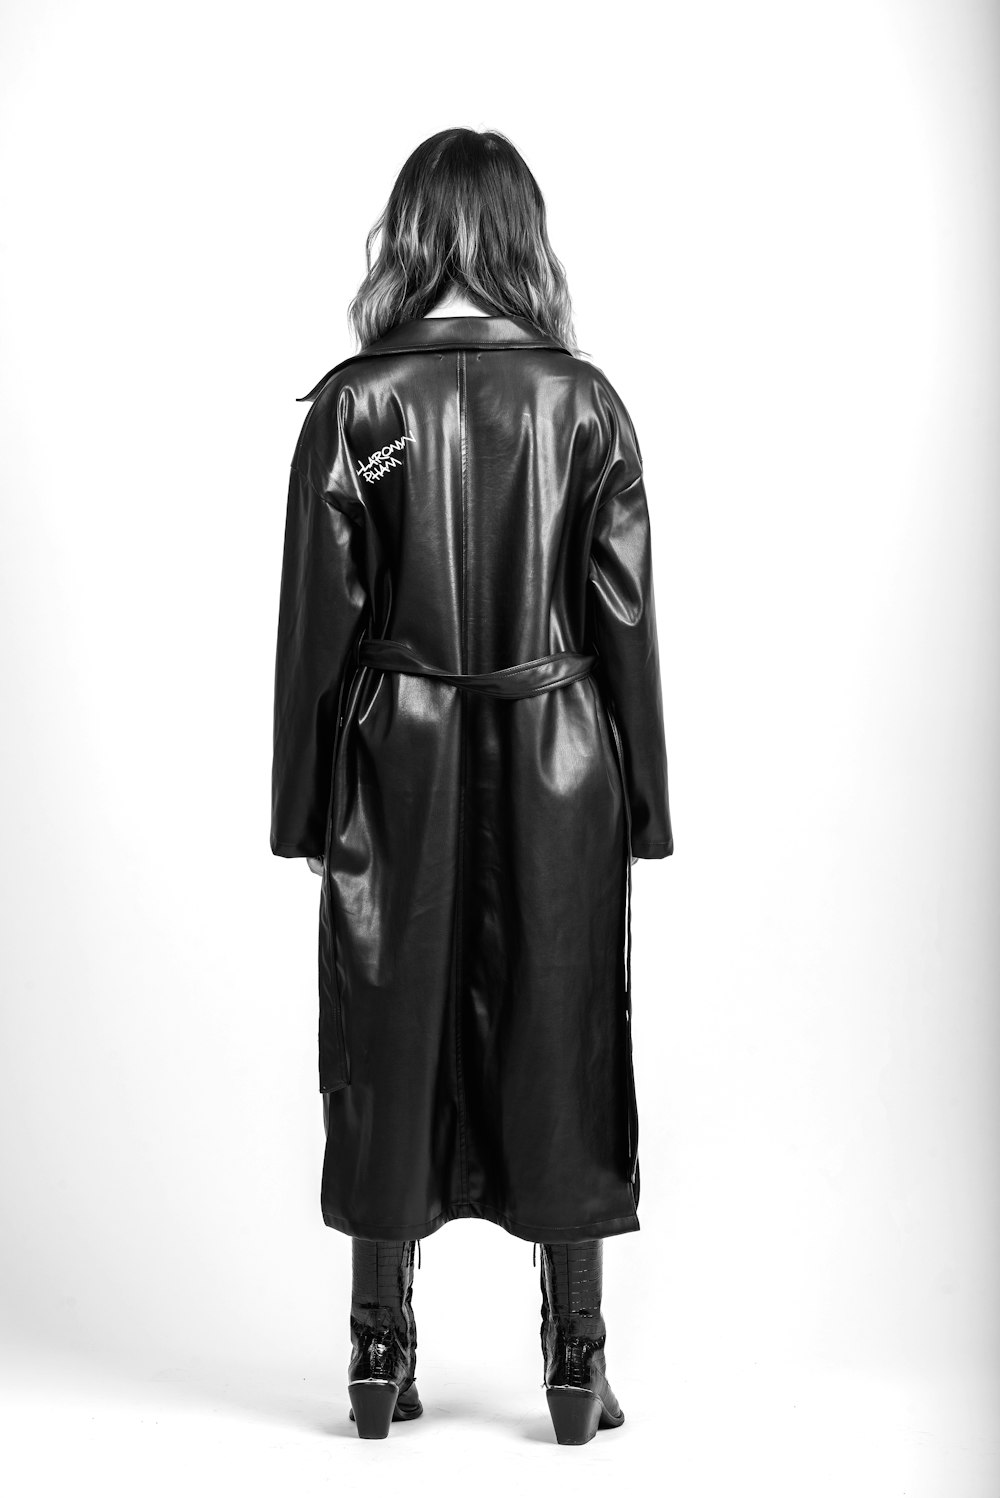 woman in black coat standing